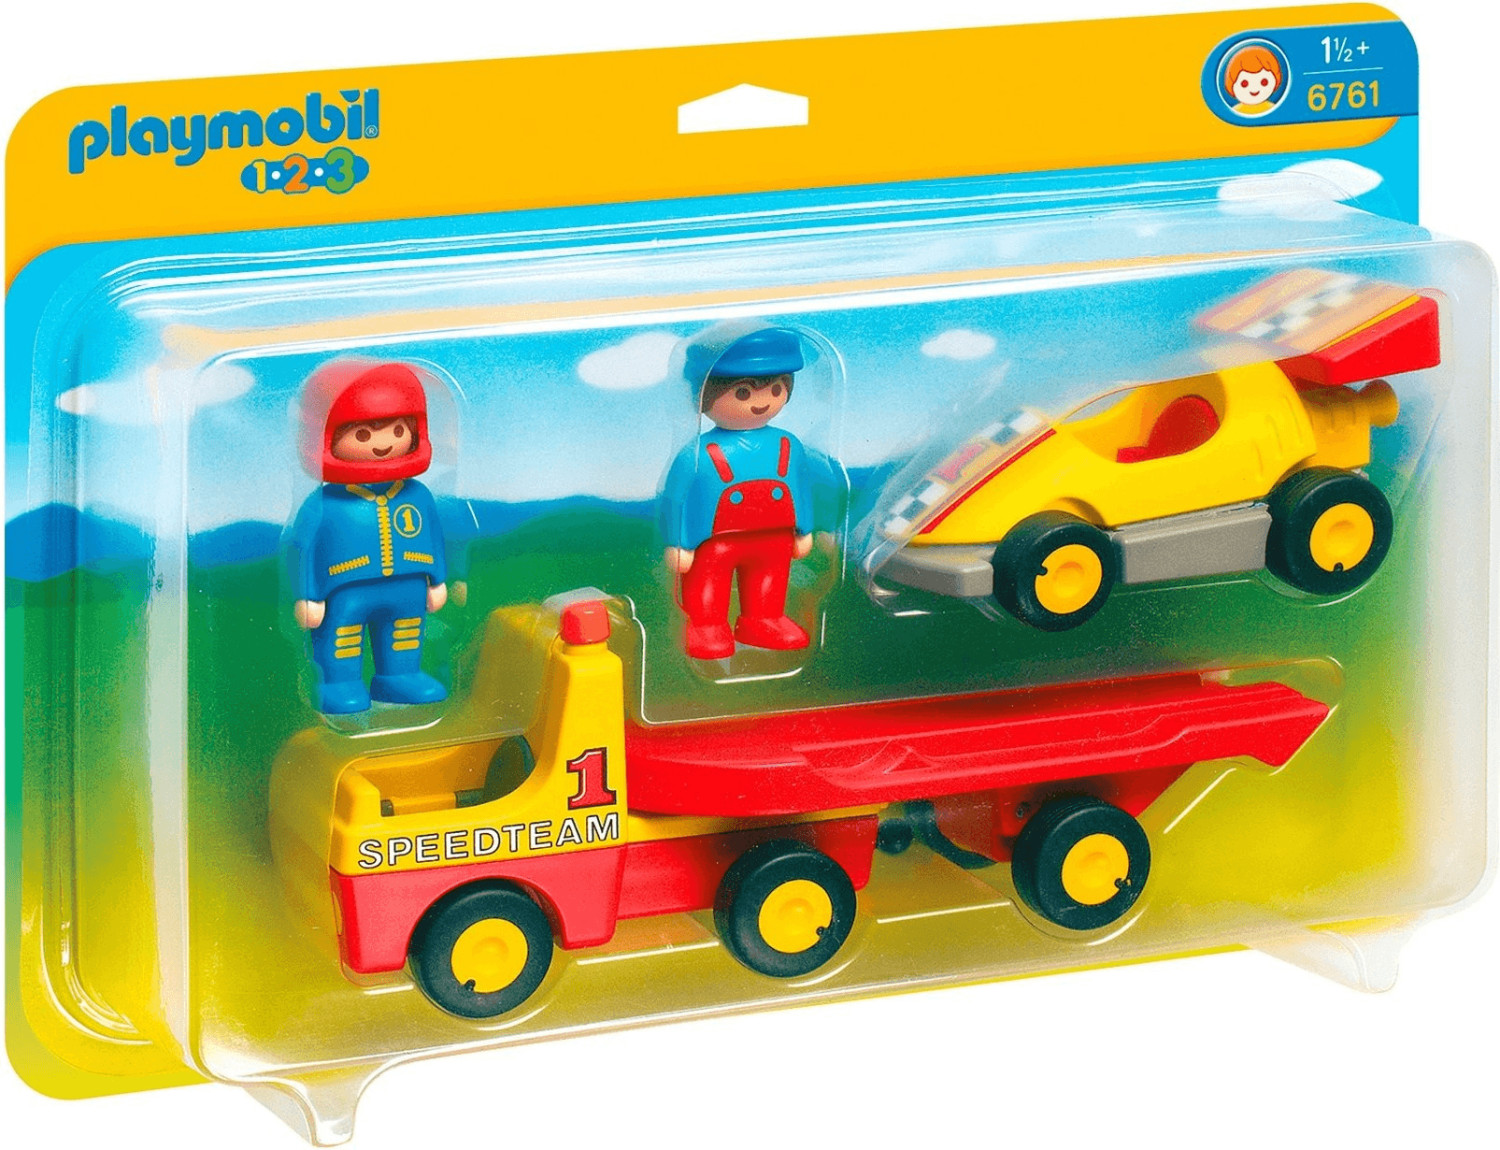 Playmobil Racing Car With Transporter (6761)